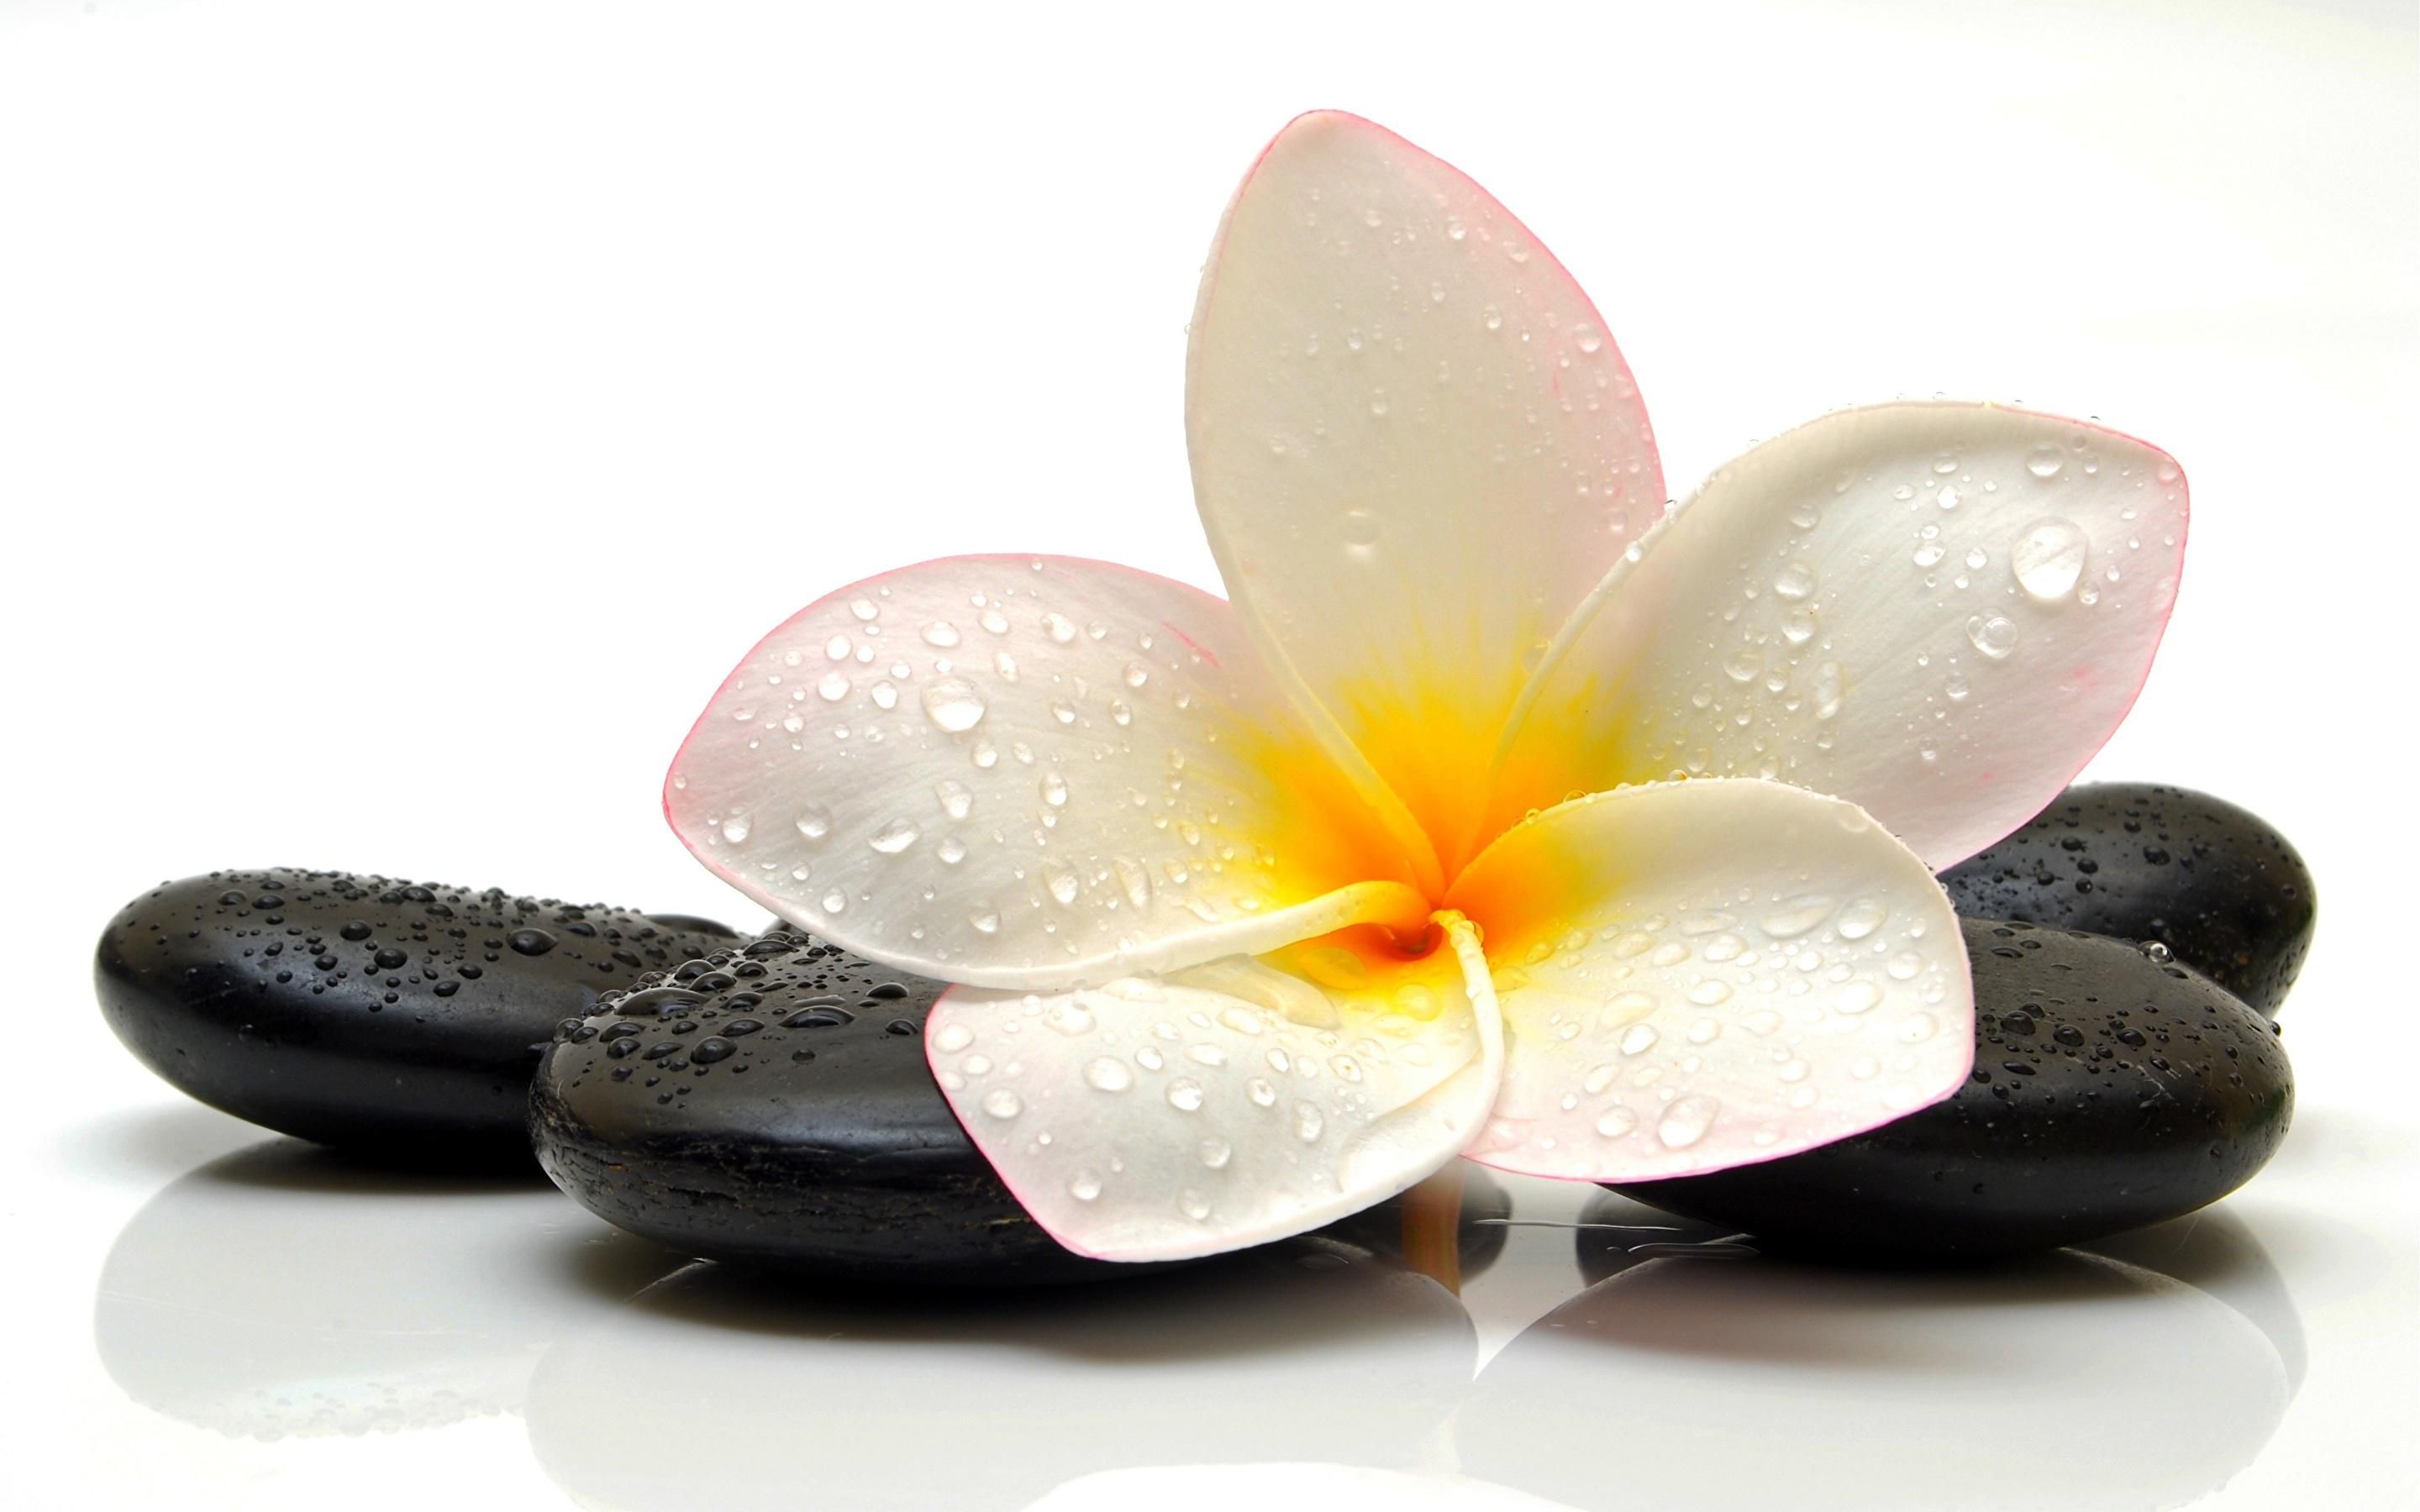 دانلود رایگان Background زیبا گل پلومریا برای لپتاپ